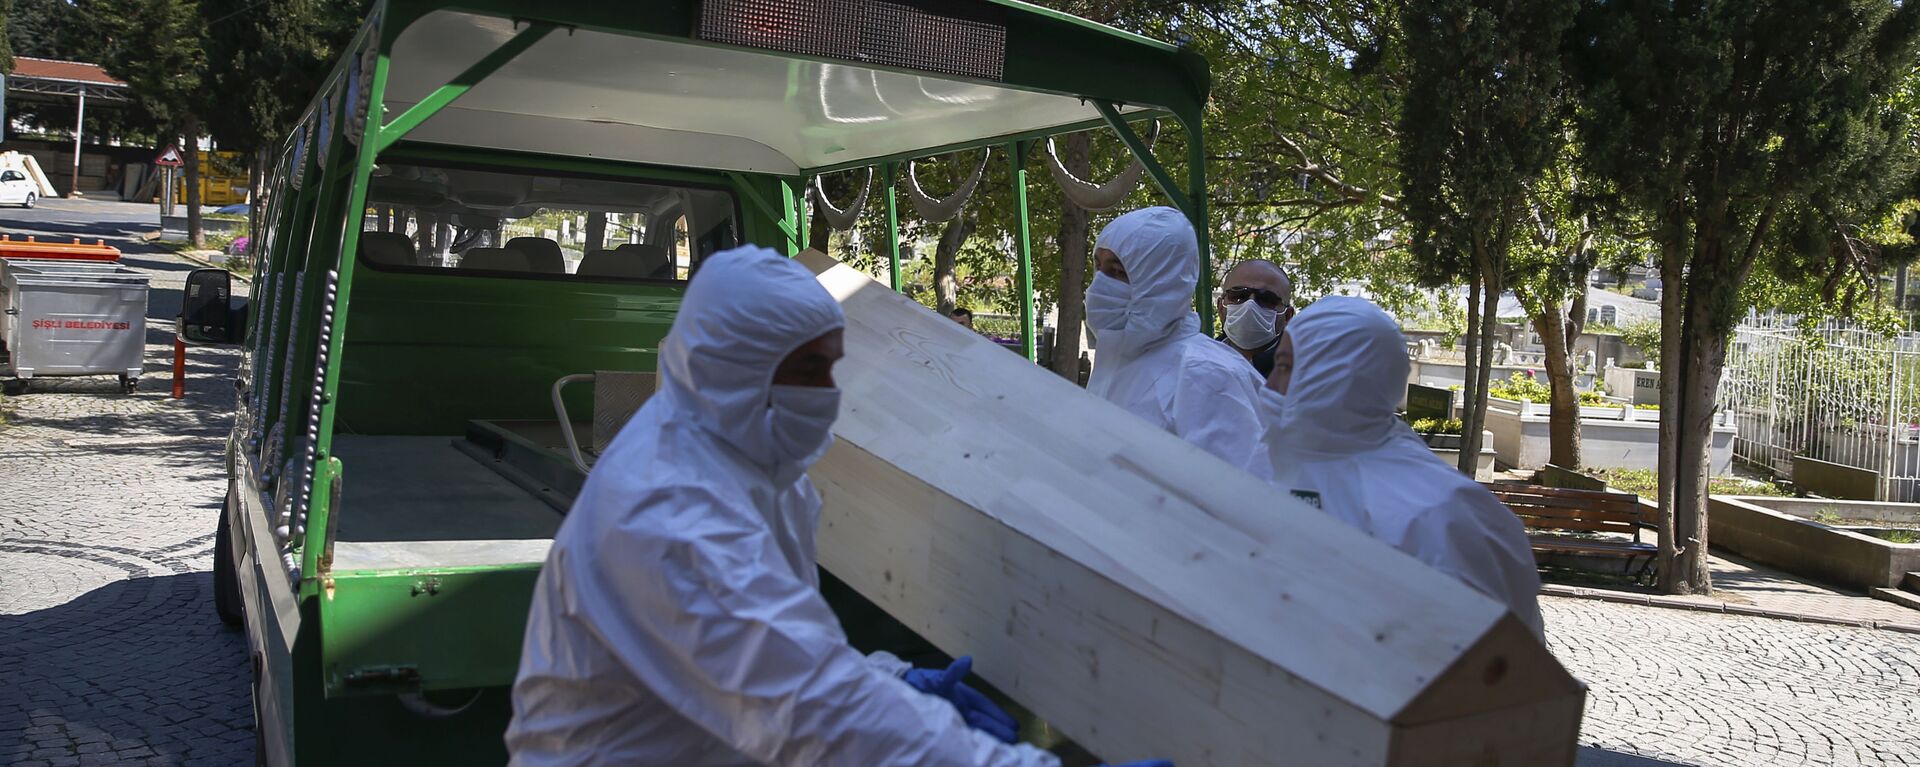 Работники морга погружают гроб с погибшим от коронавируса, архивное фото - Sputnik Тоҷикистон, 1920, 07.07.2021